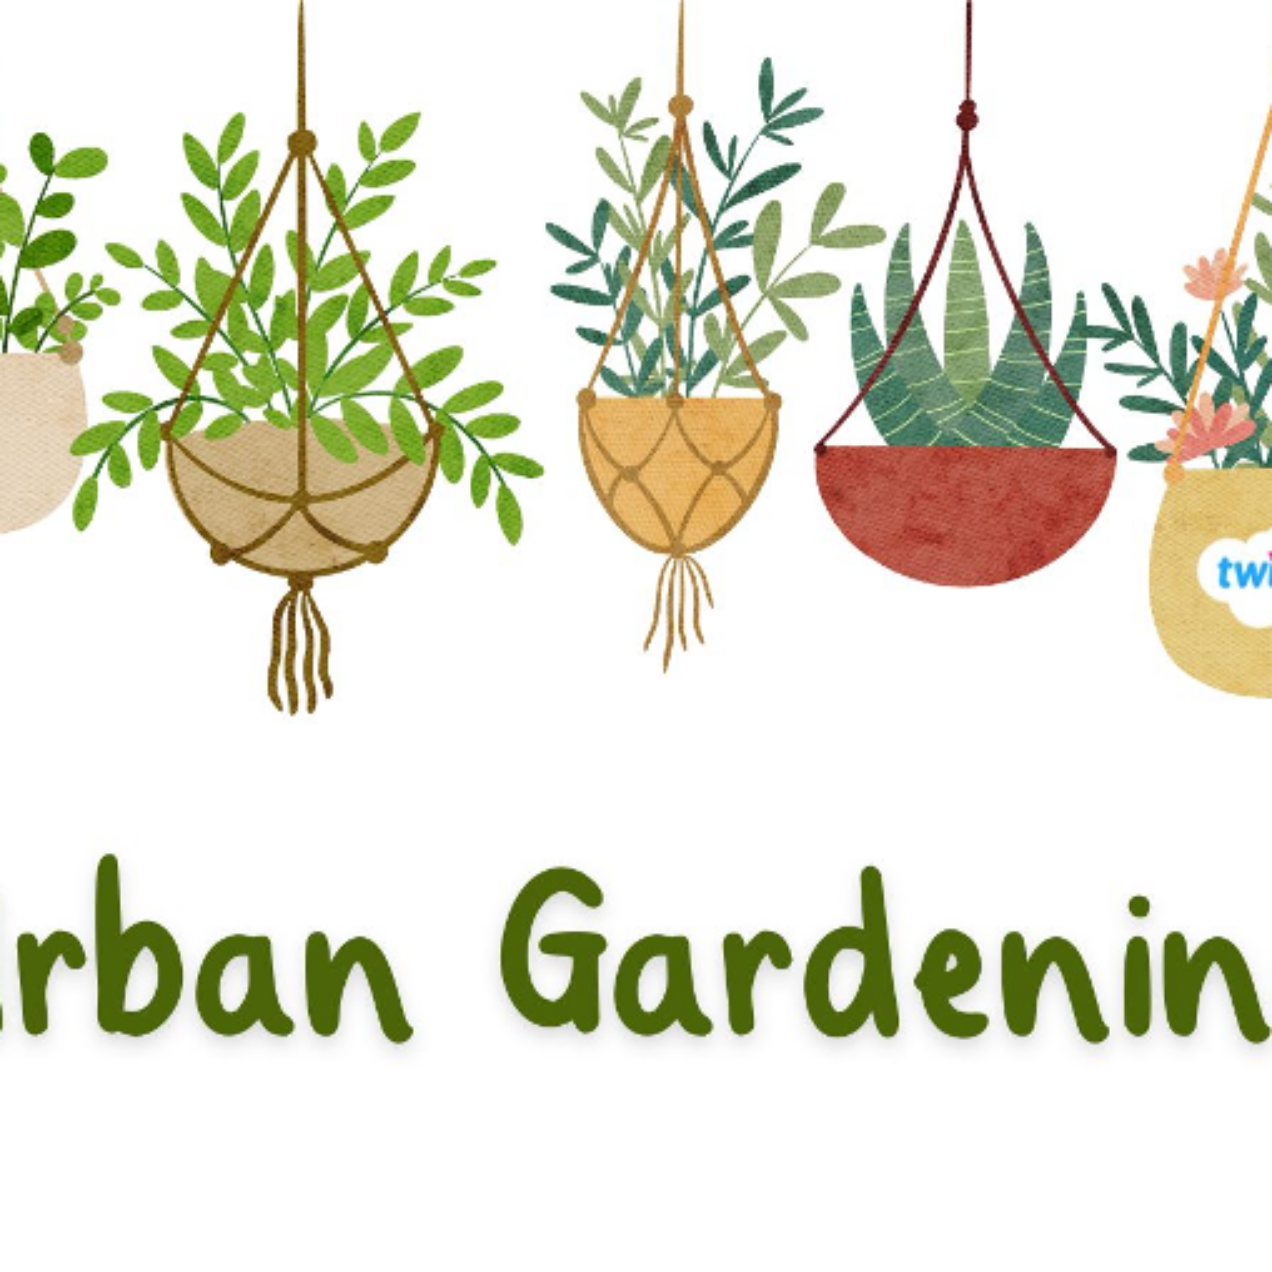 Urban Gardening für Anfänger